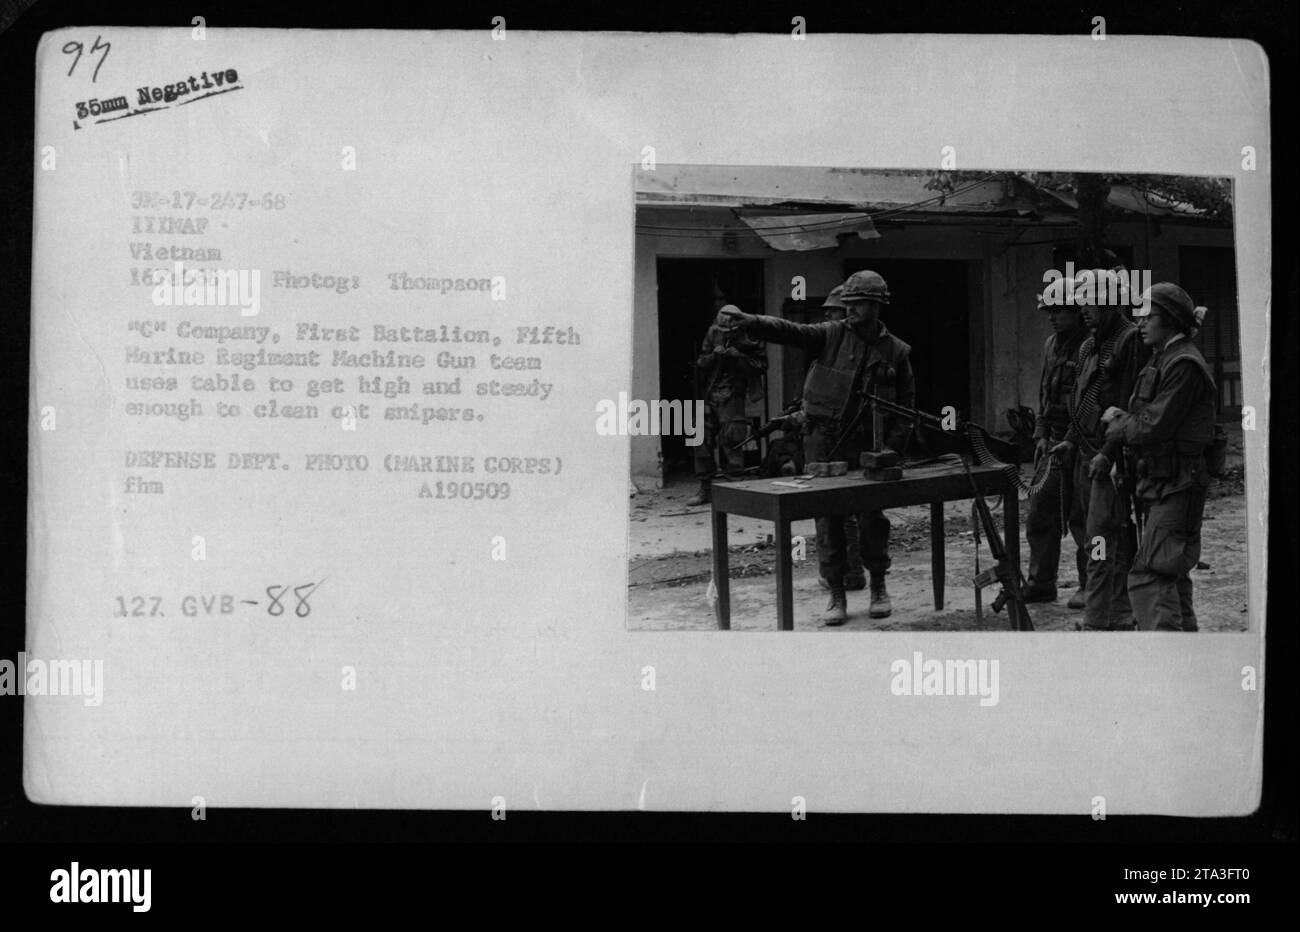 Les Marines de la compagnie C, du premier bataillon, du 5e régiment de Marines utilisent une table pour s'élever et maintenir une position stable tout en engageant des tireurs d'élite ennemis pendant le combat au Vietnam le 16 février 1968. Cette photographie a été prise par Photogs Thompson et est une photo officielle du ministère de la Défense.' Banque D'Images